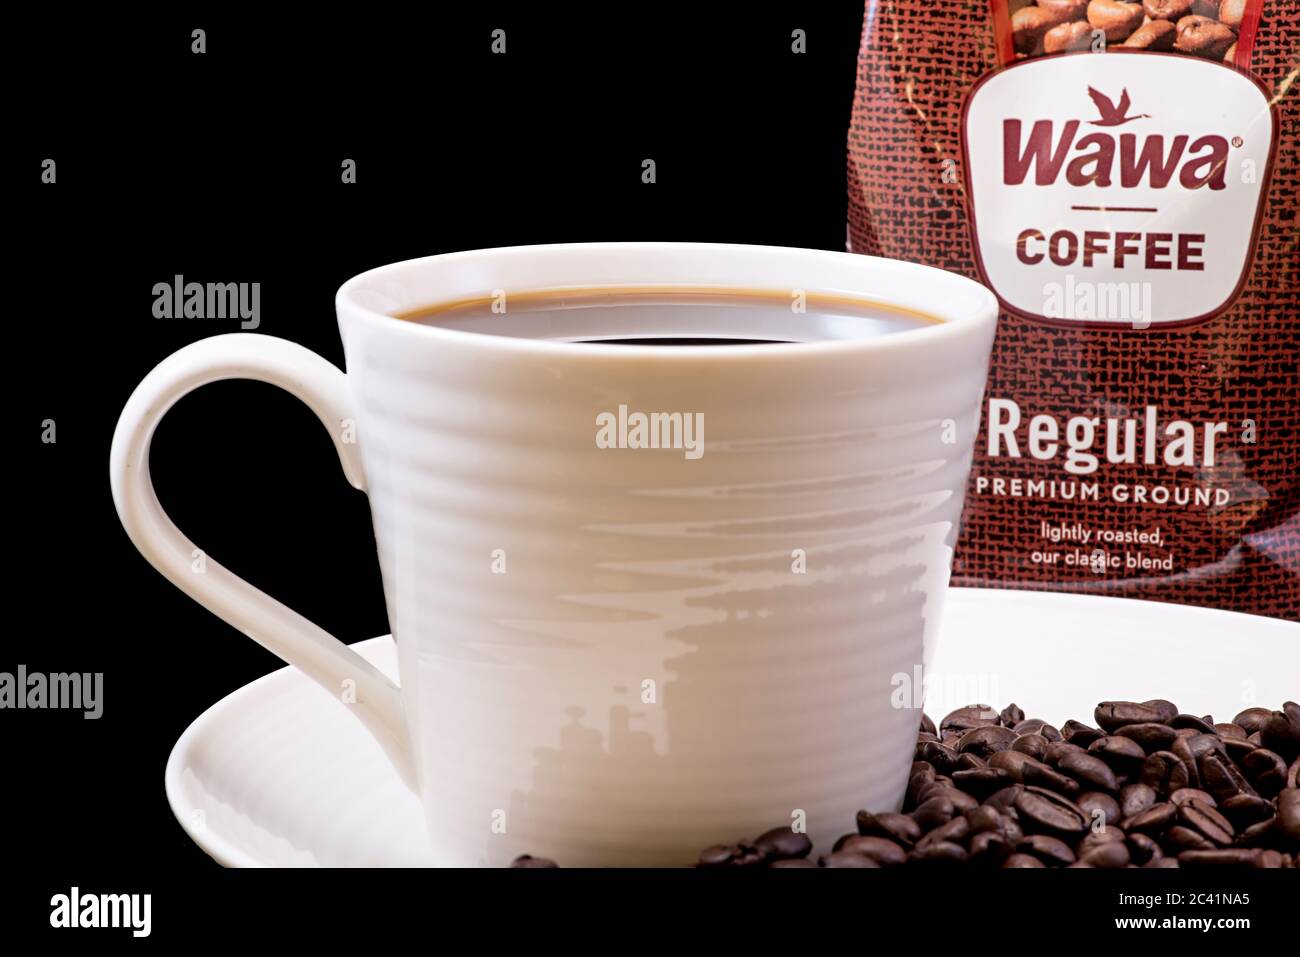 Wawa normale Kaffeetasche Nahaufnahme mit einer gebrauten Tasse Wawa Kaffee, weiße Tasse auf einem weißen Teller, Kaffeebohnen und einem festen schwarzen Hintergrund für Ausschnitte Stockfoto